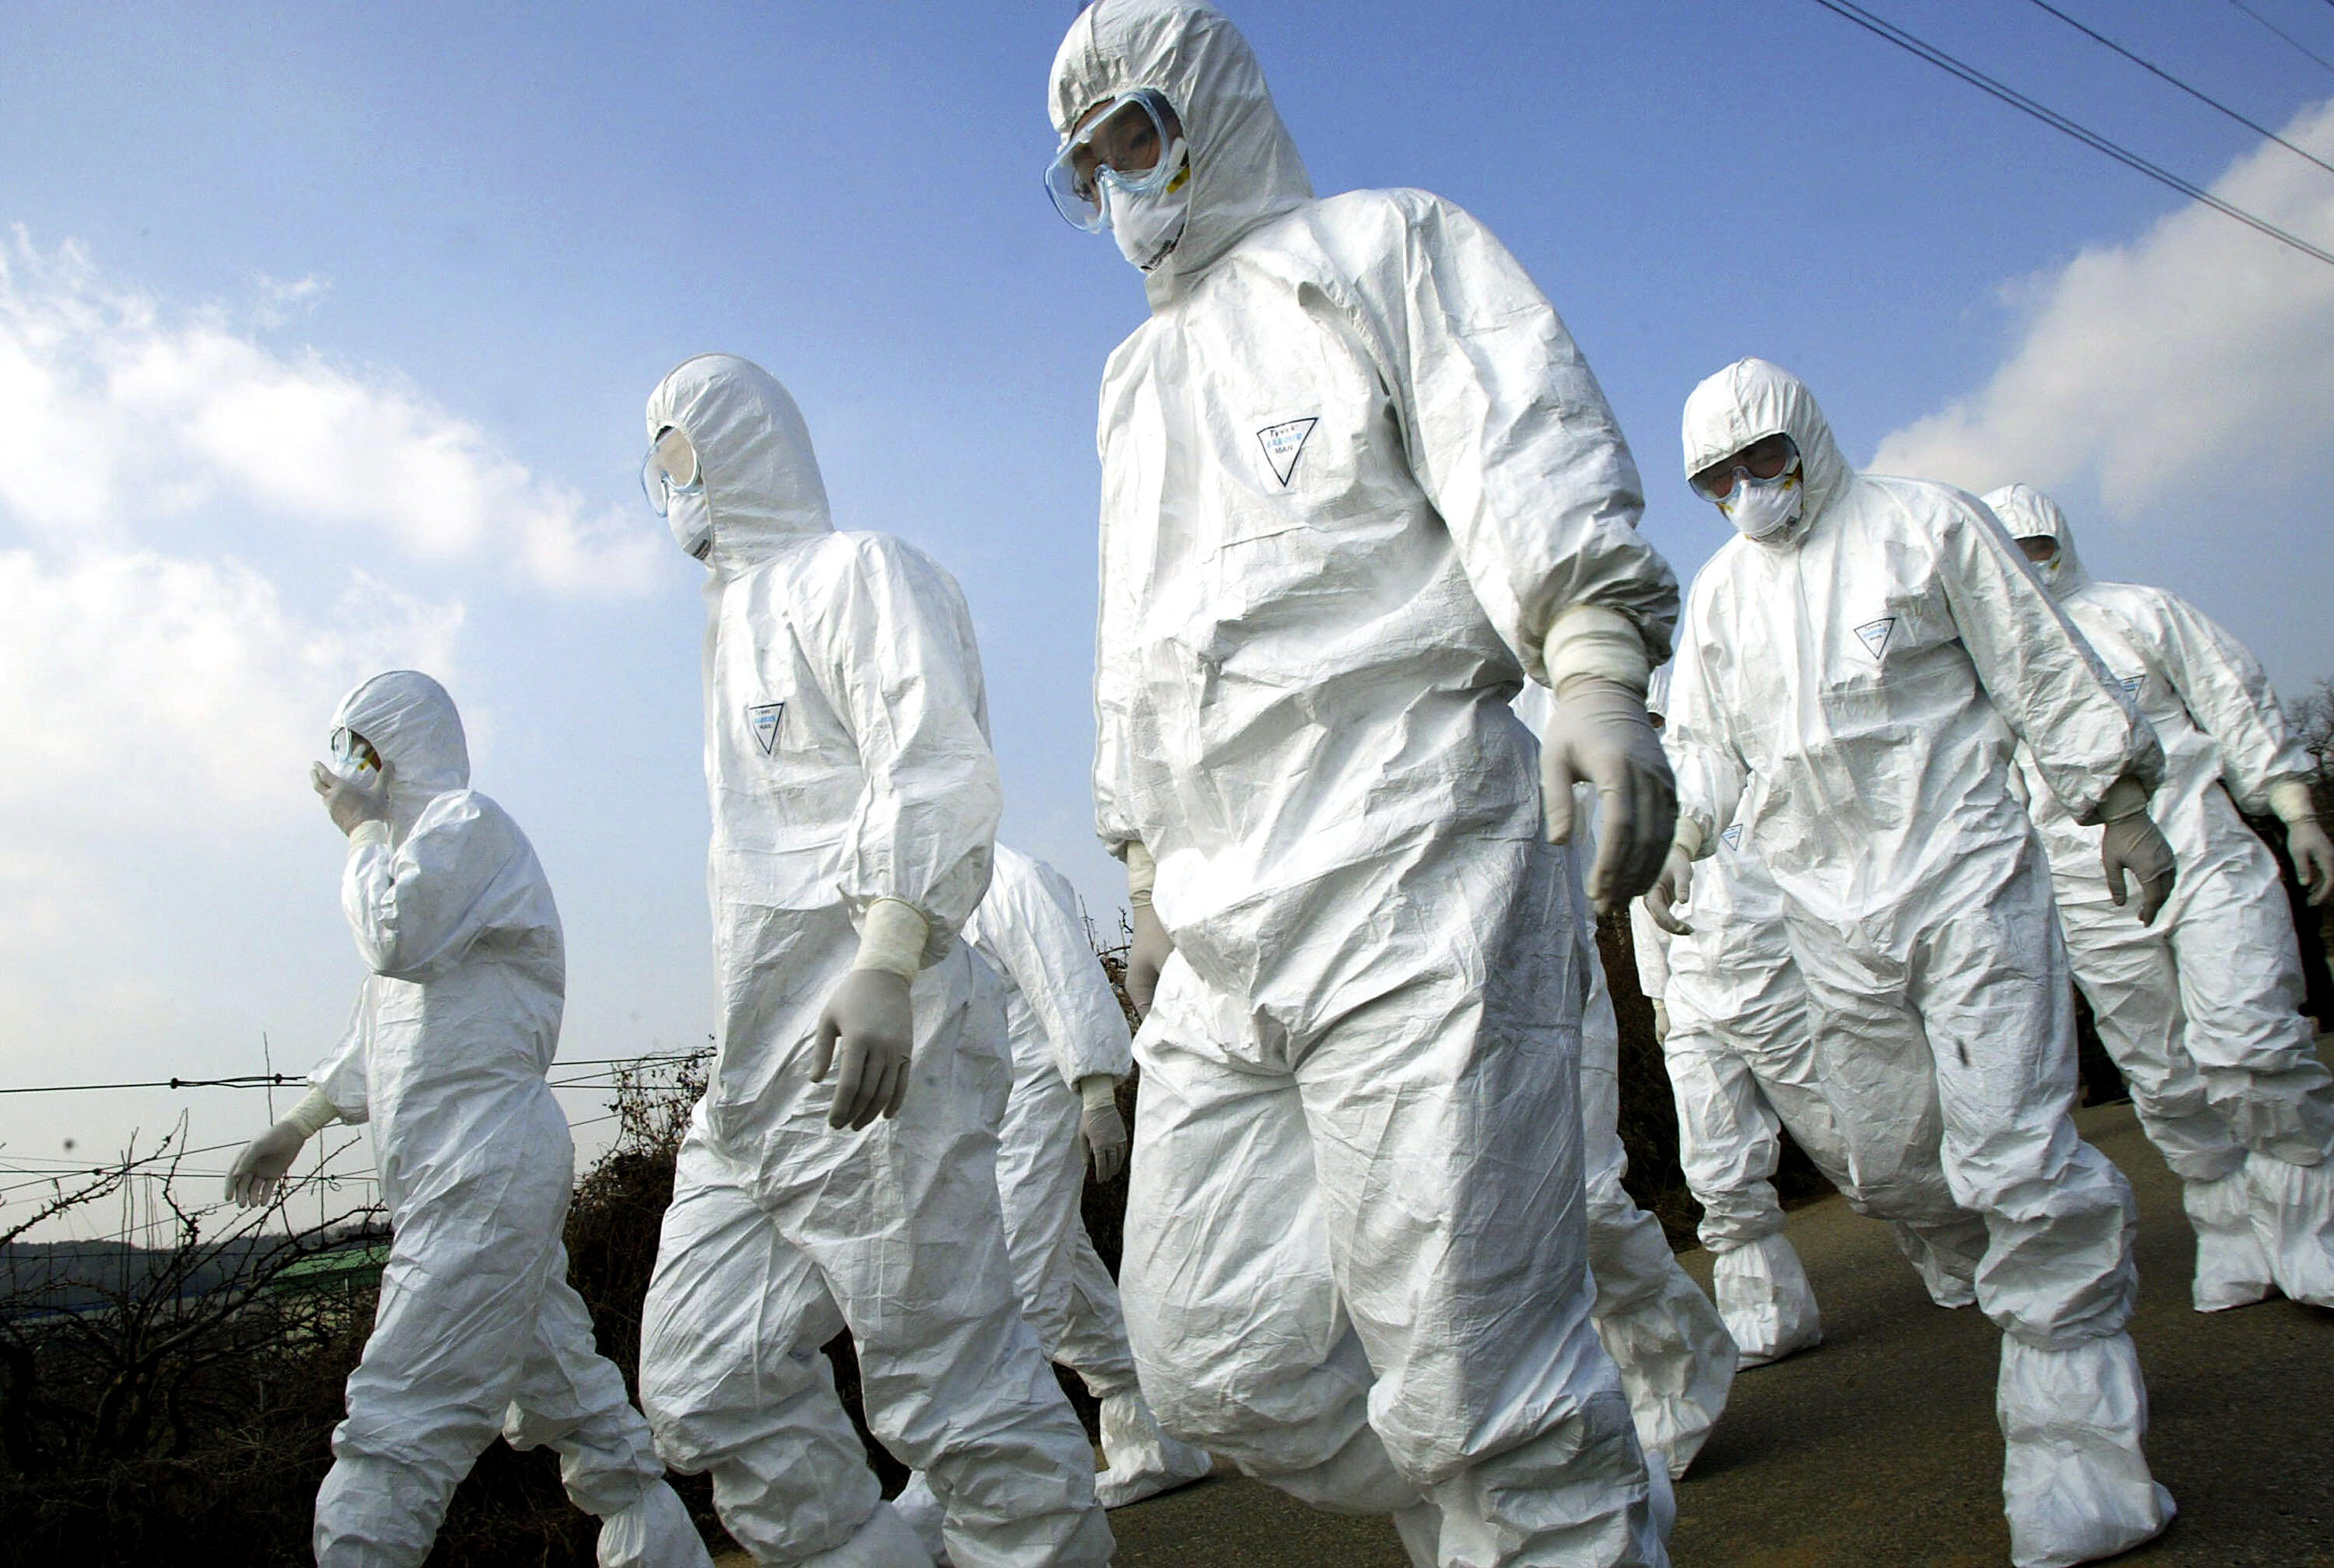 2011 Movie Predicting Virus Becomes Most Streamed Amid Coronavirus Pandemic - Thumbnail Image